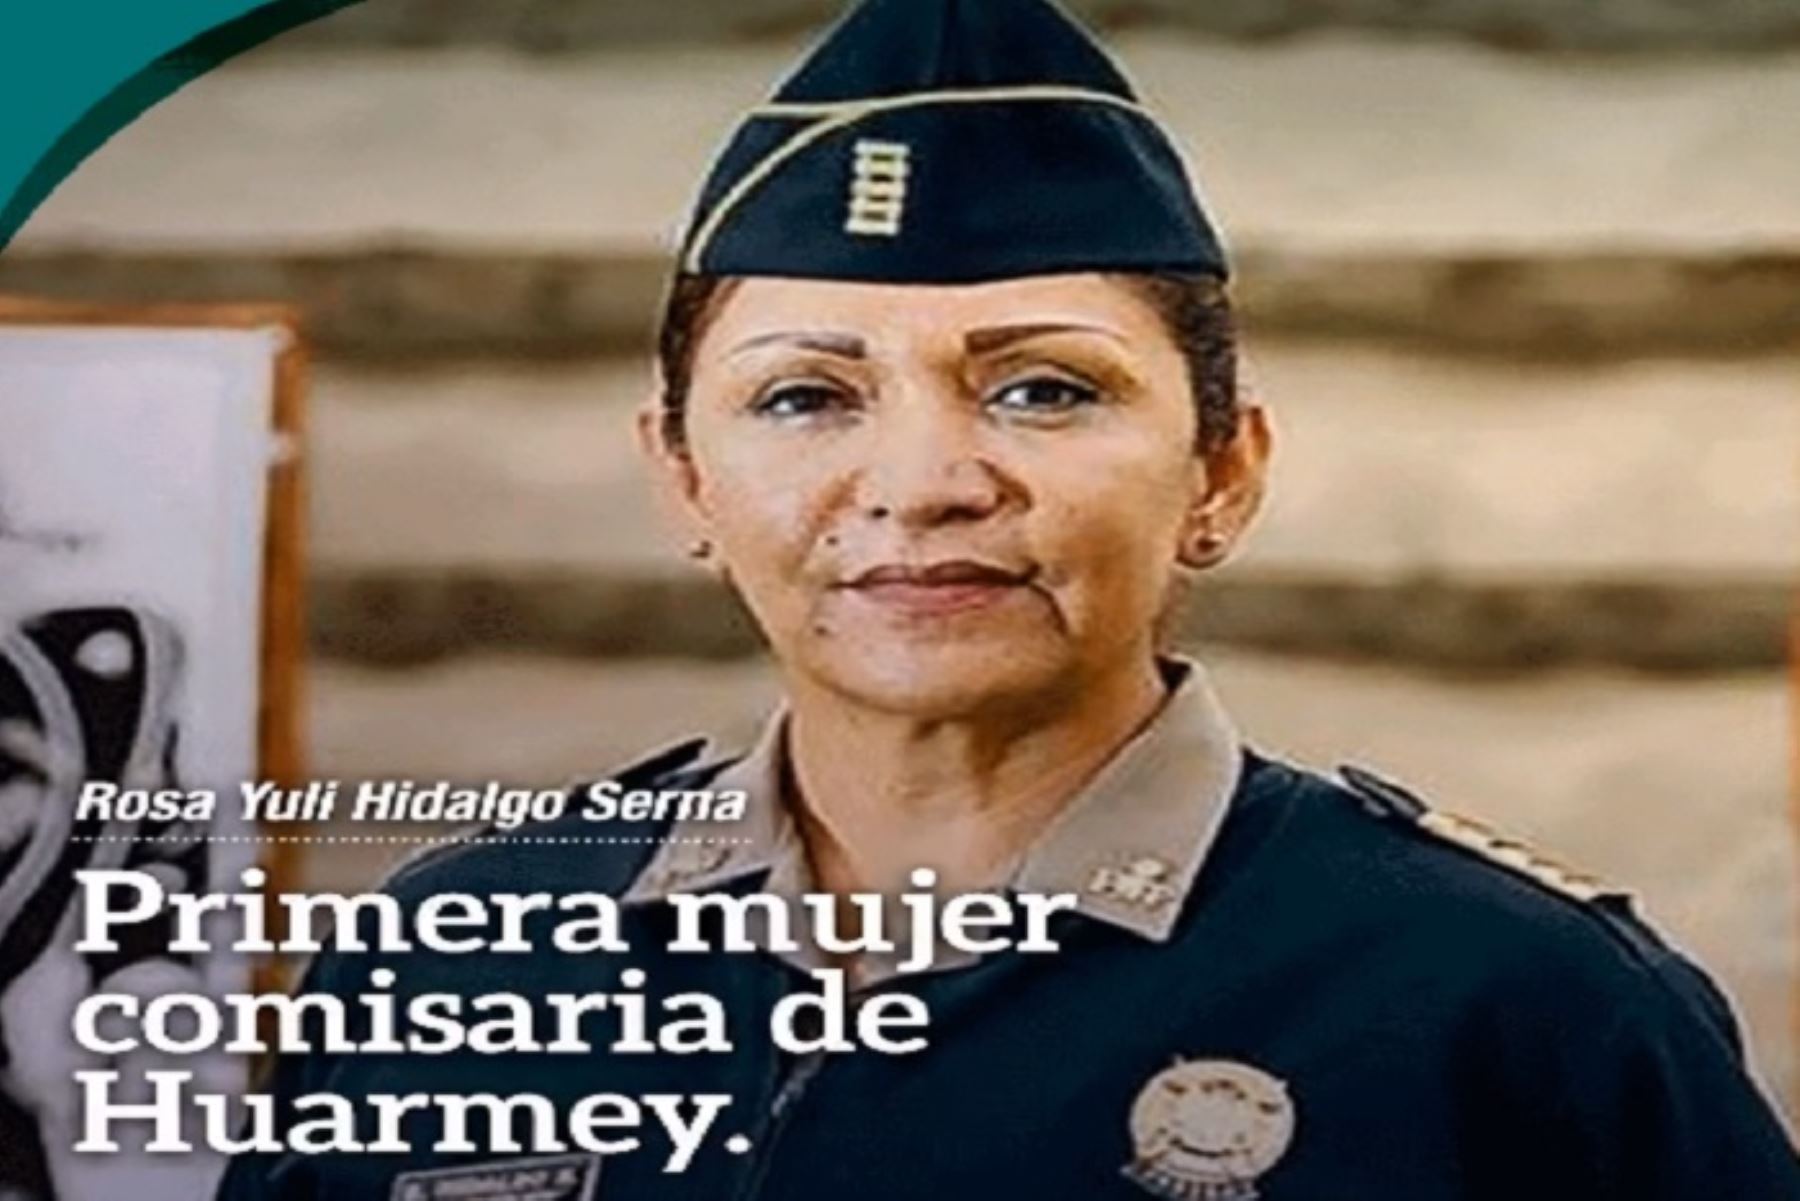 La comandante Rosa Hidalgo, la primera comisaria de Huarmey, en la región Áncash, se comprometió a luchar contra la violencia hacia la mujer y la inseguridad ciudadana. ANDINA/Difusión